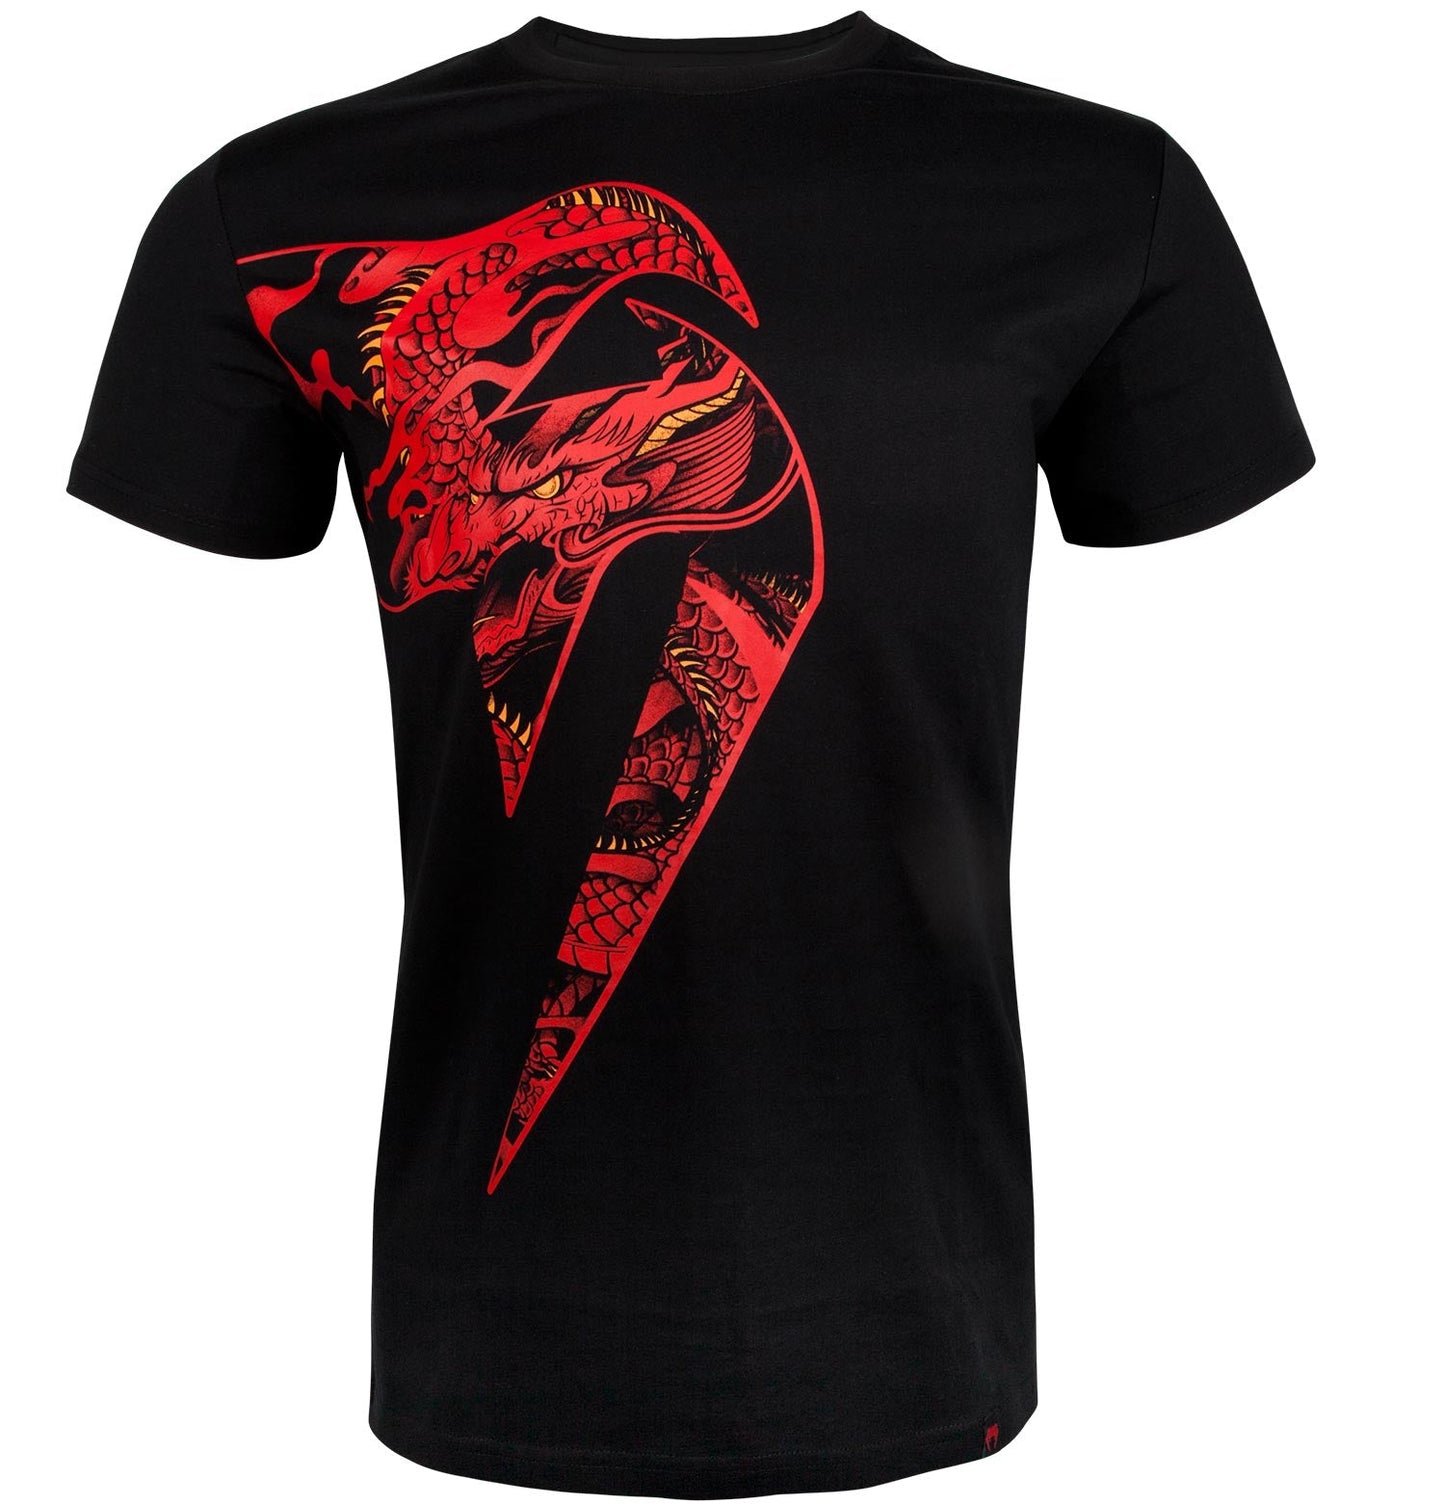 Venum Giant x Dragon T-shirt - Black/Red